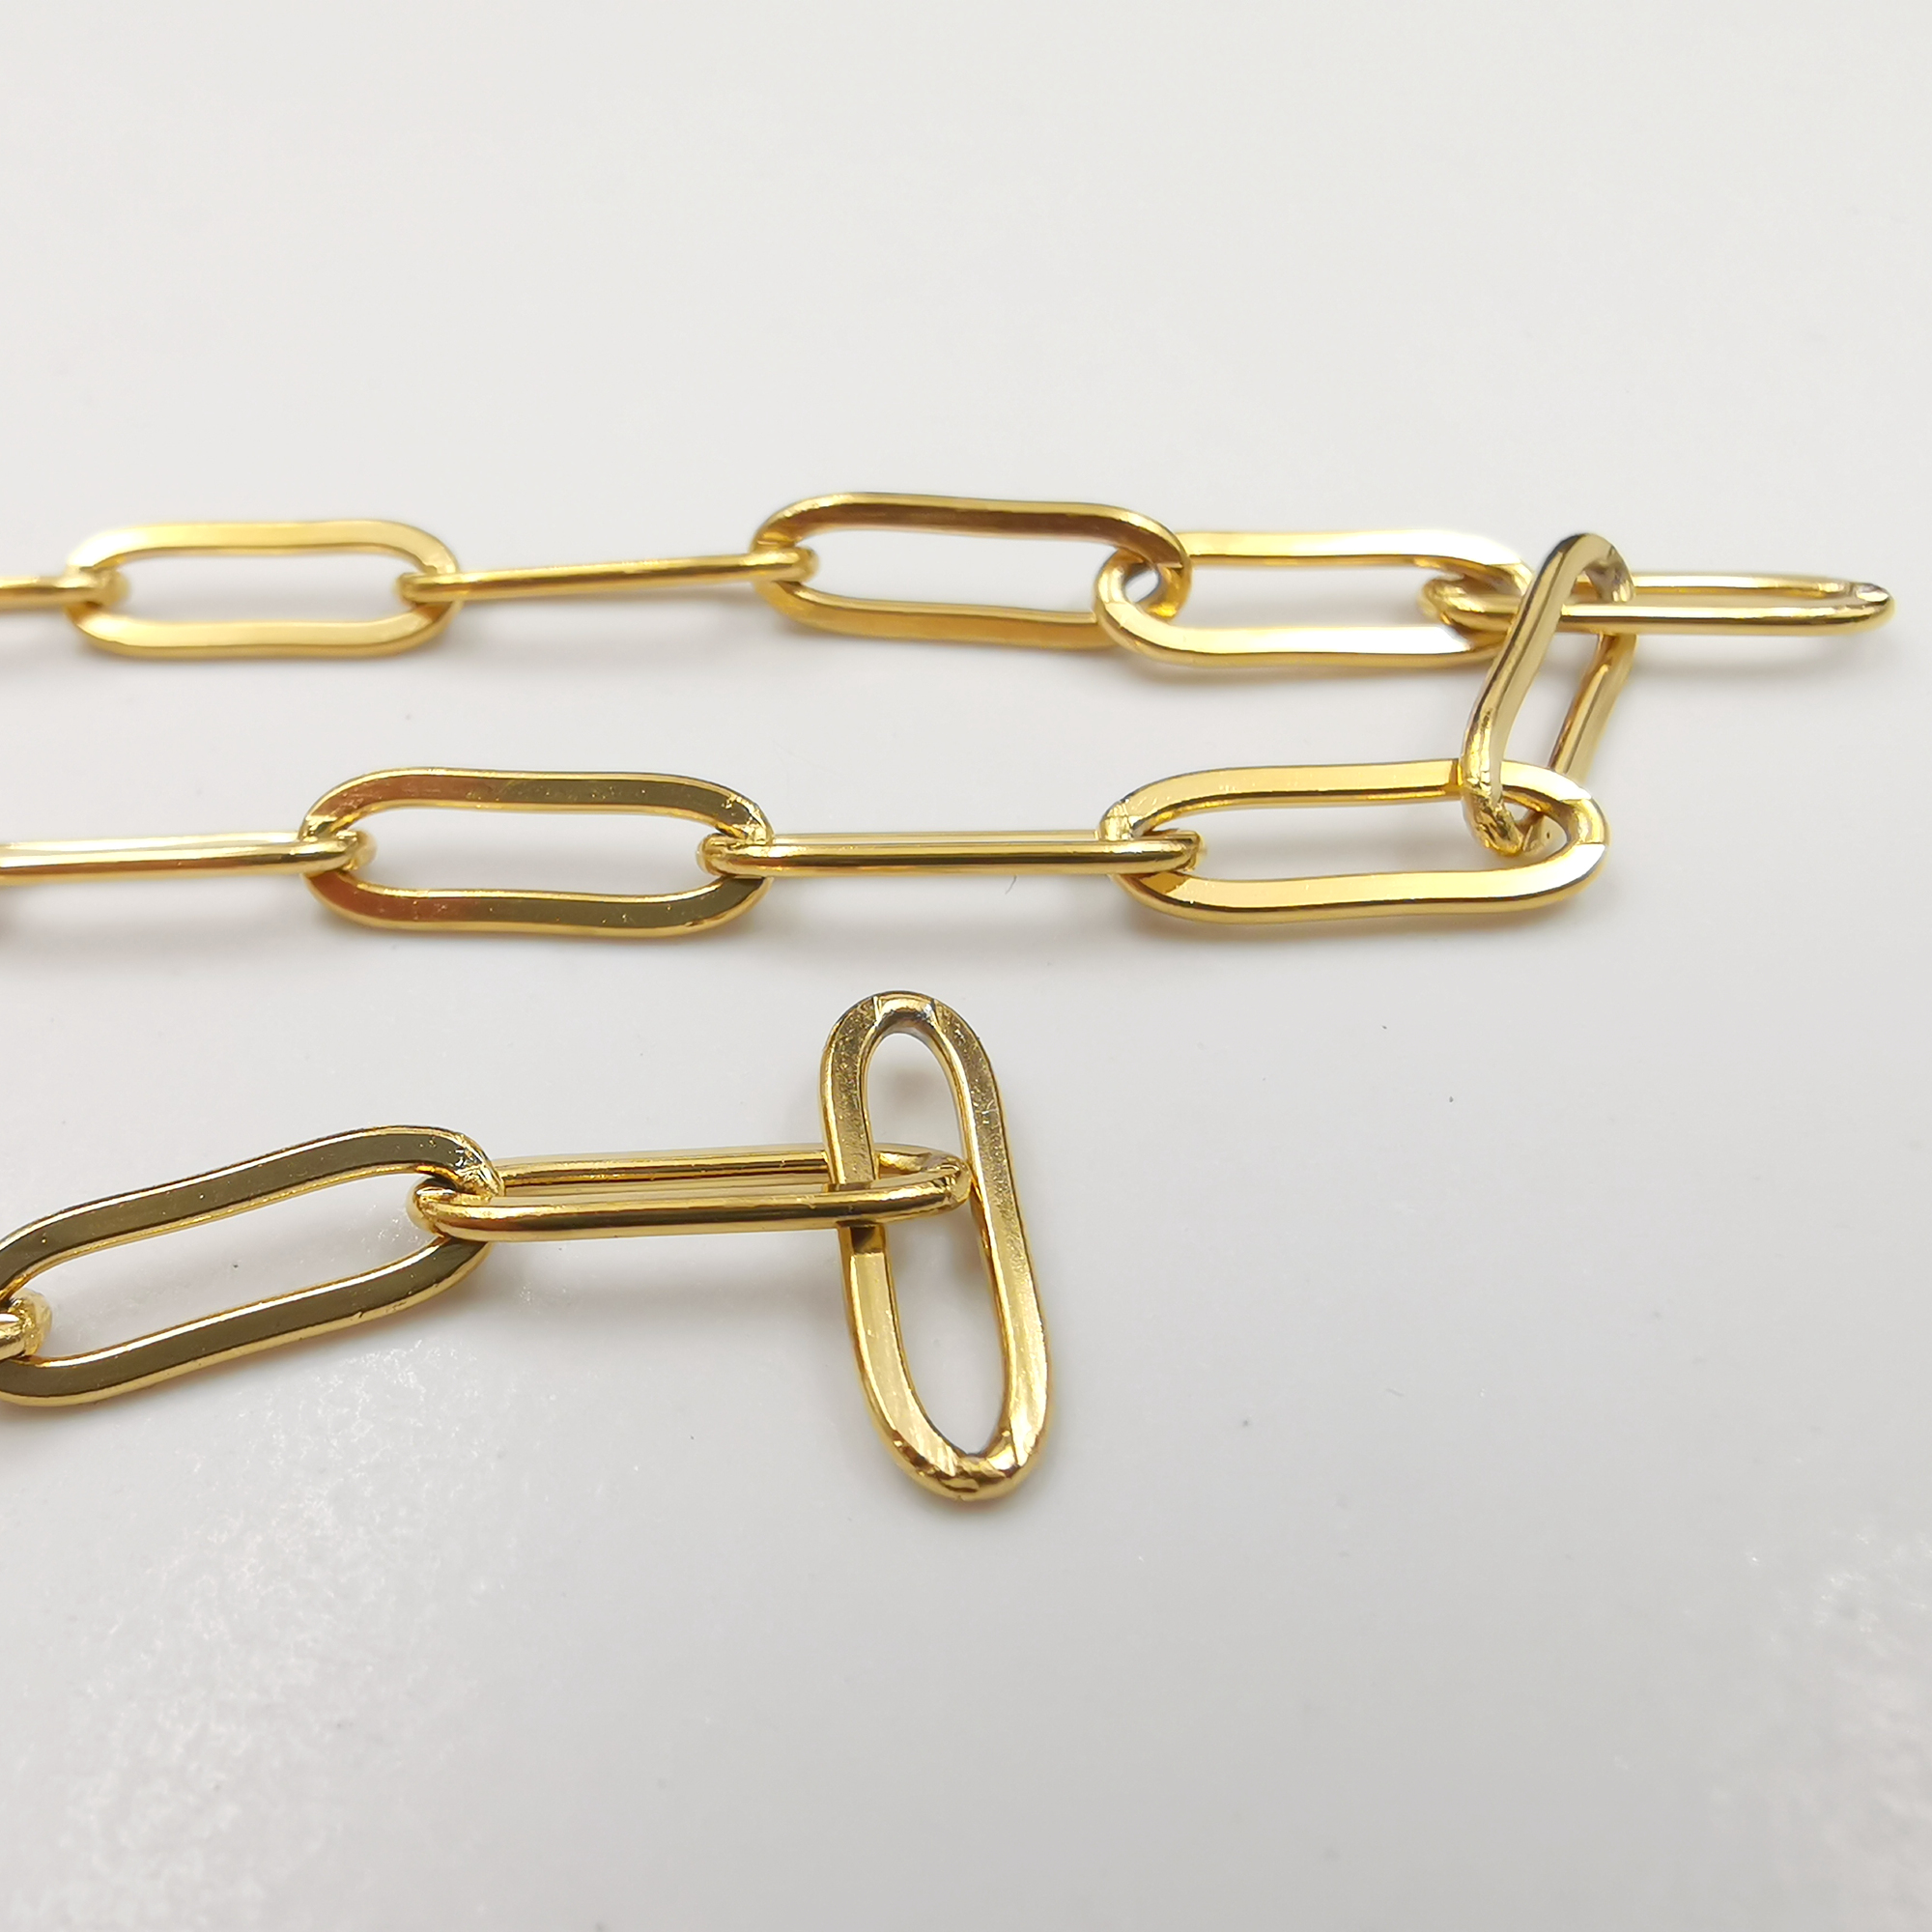 Lote de 5 metros banhado a ouro forte soldagem caixa longa corrente achados de joias colar de aço inoxidável faça você mesmo marcação encaixe 4,3 mm * 7 mm tamanho